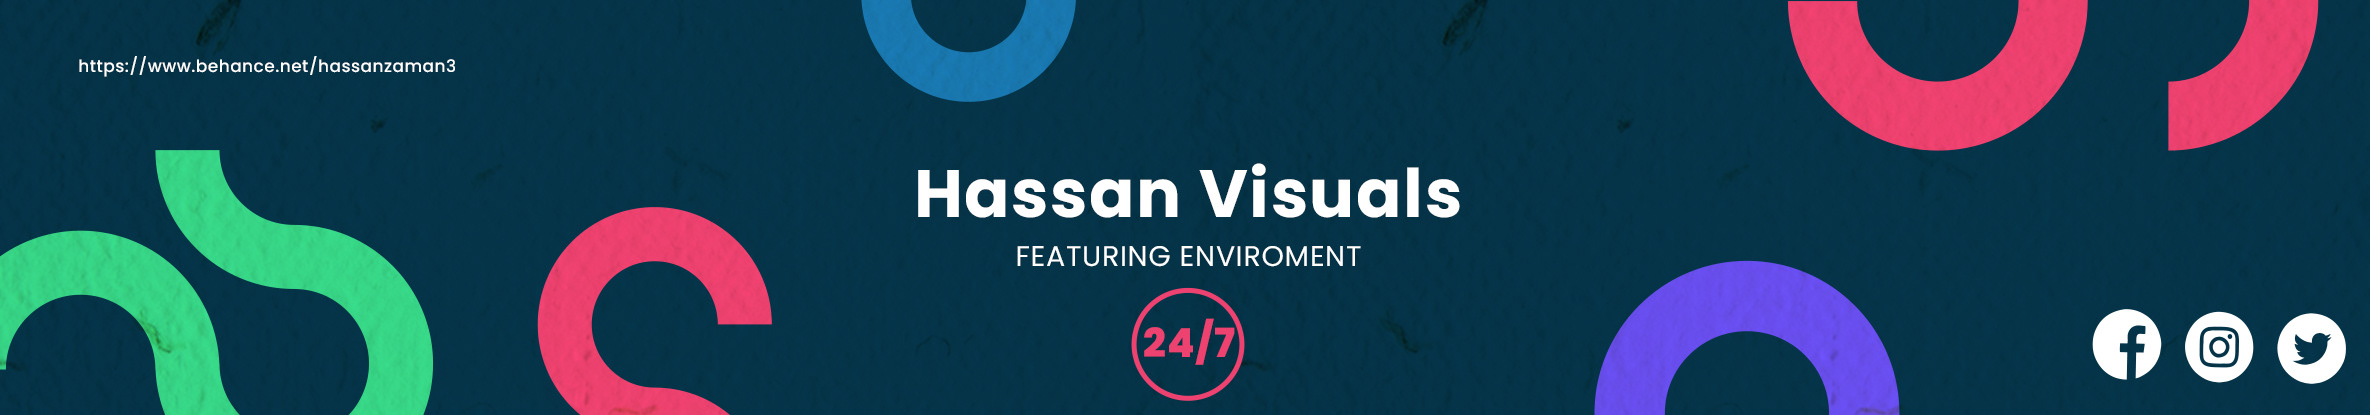 Hassan Visuals profil başlığı